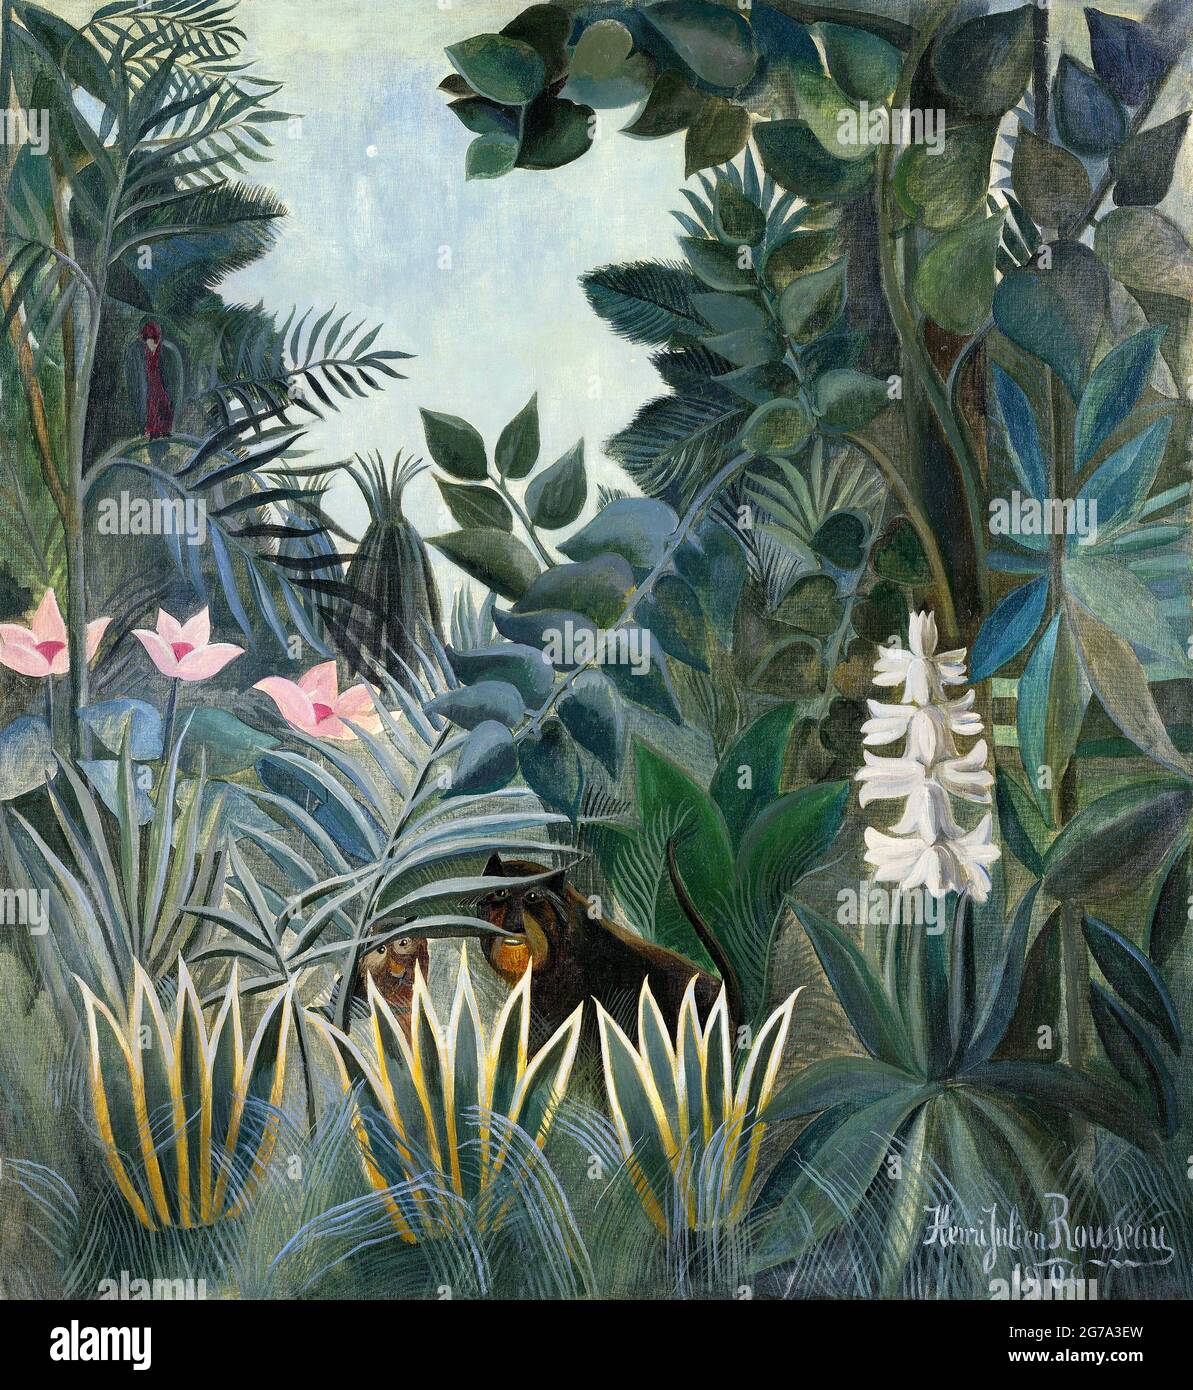 La jungle équatoriale par Henri Julien Félix Rousseau (1844-1910), huile sur toile, 1909 Banque D'Images